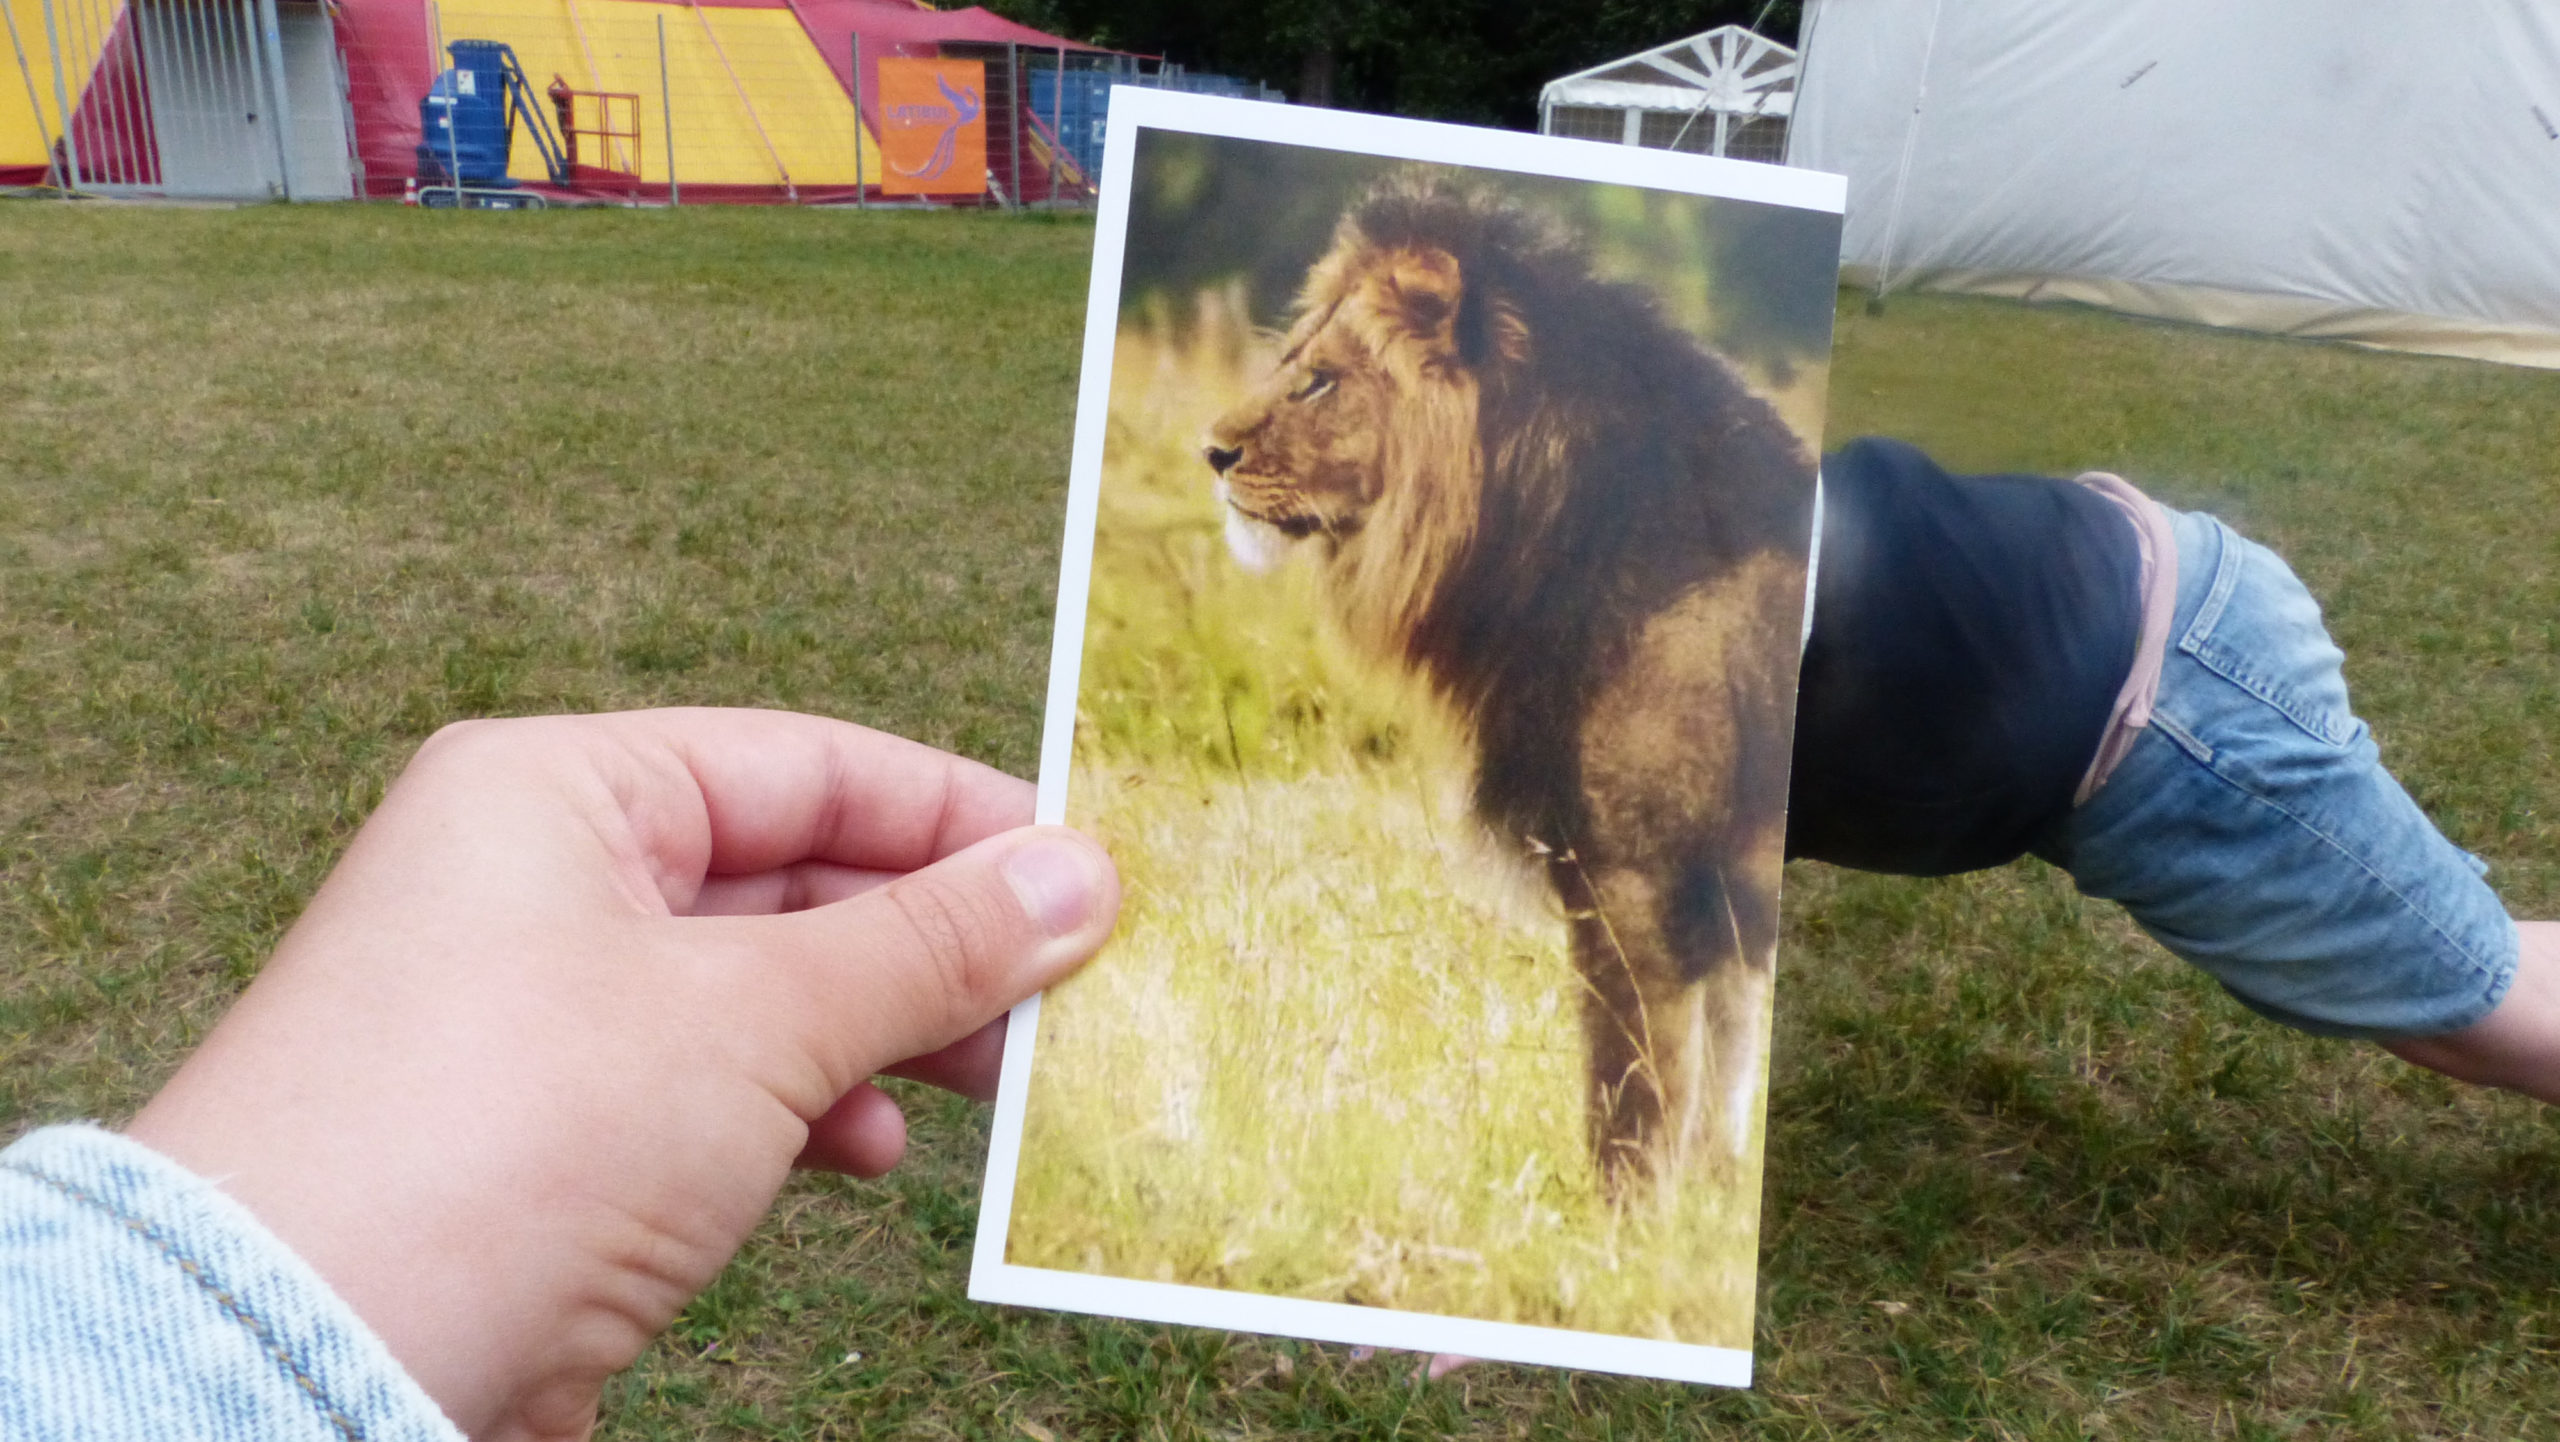 Ein Foto eines Löwen wird vor den Oberkörper eines im Mittelgrund befindlichen Kindes gehalten, sodass es wirkt, als werde das Kind zum Löwen.